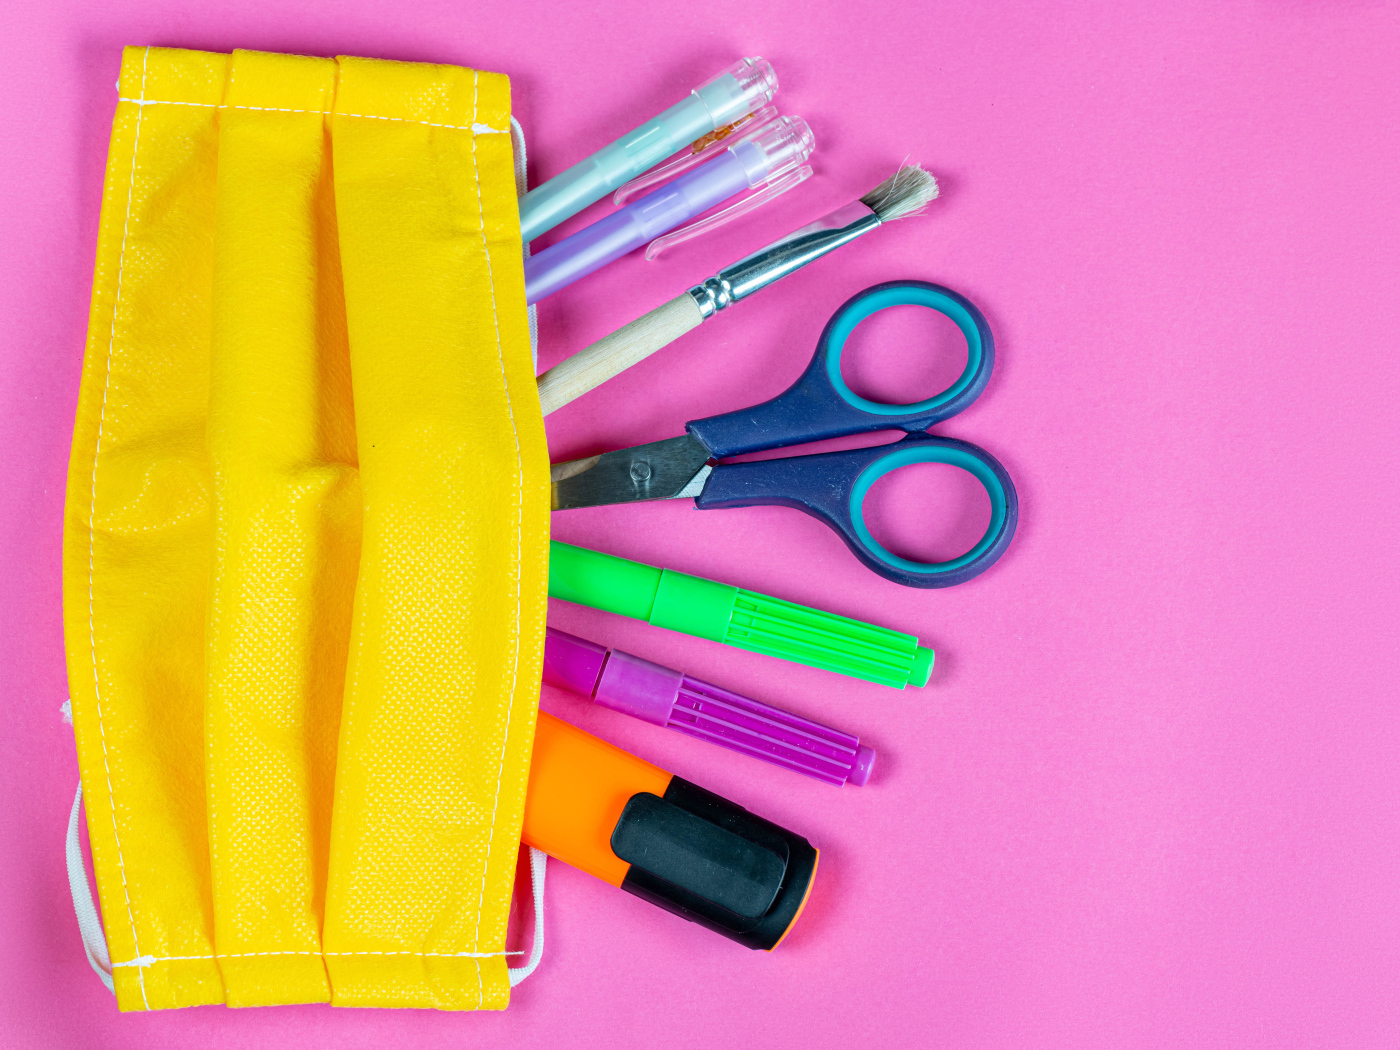 Желтая медицинская маска с ручками и ножницами на  розовом фоне